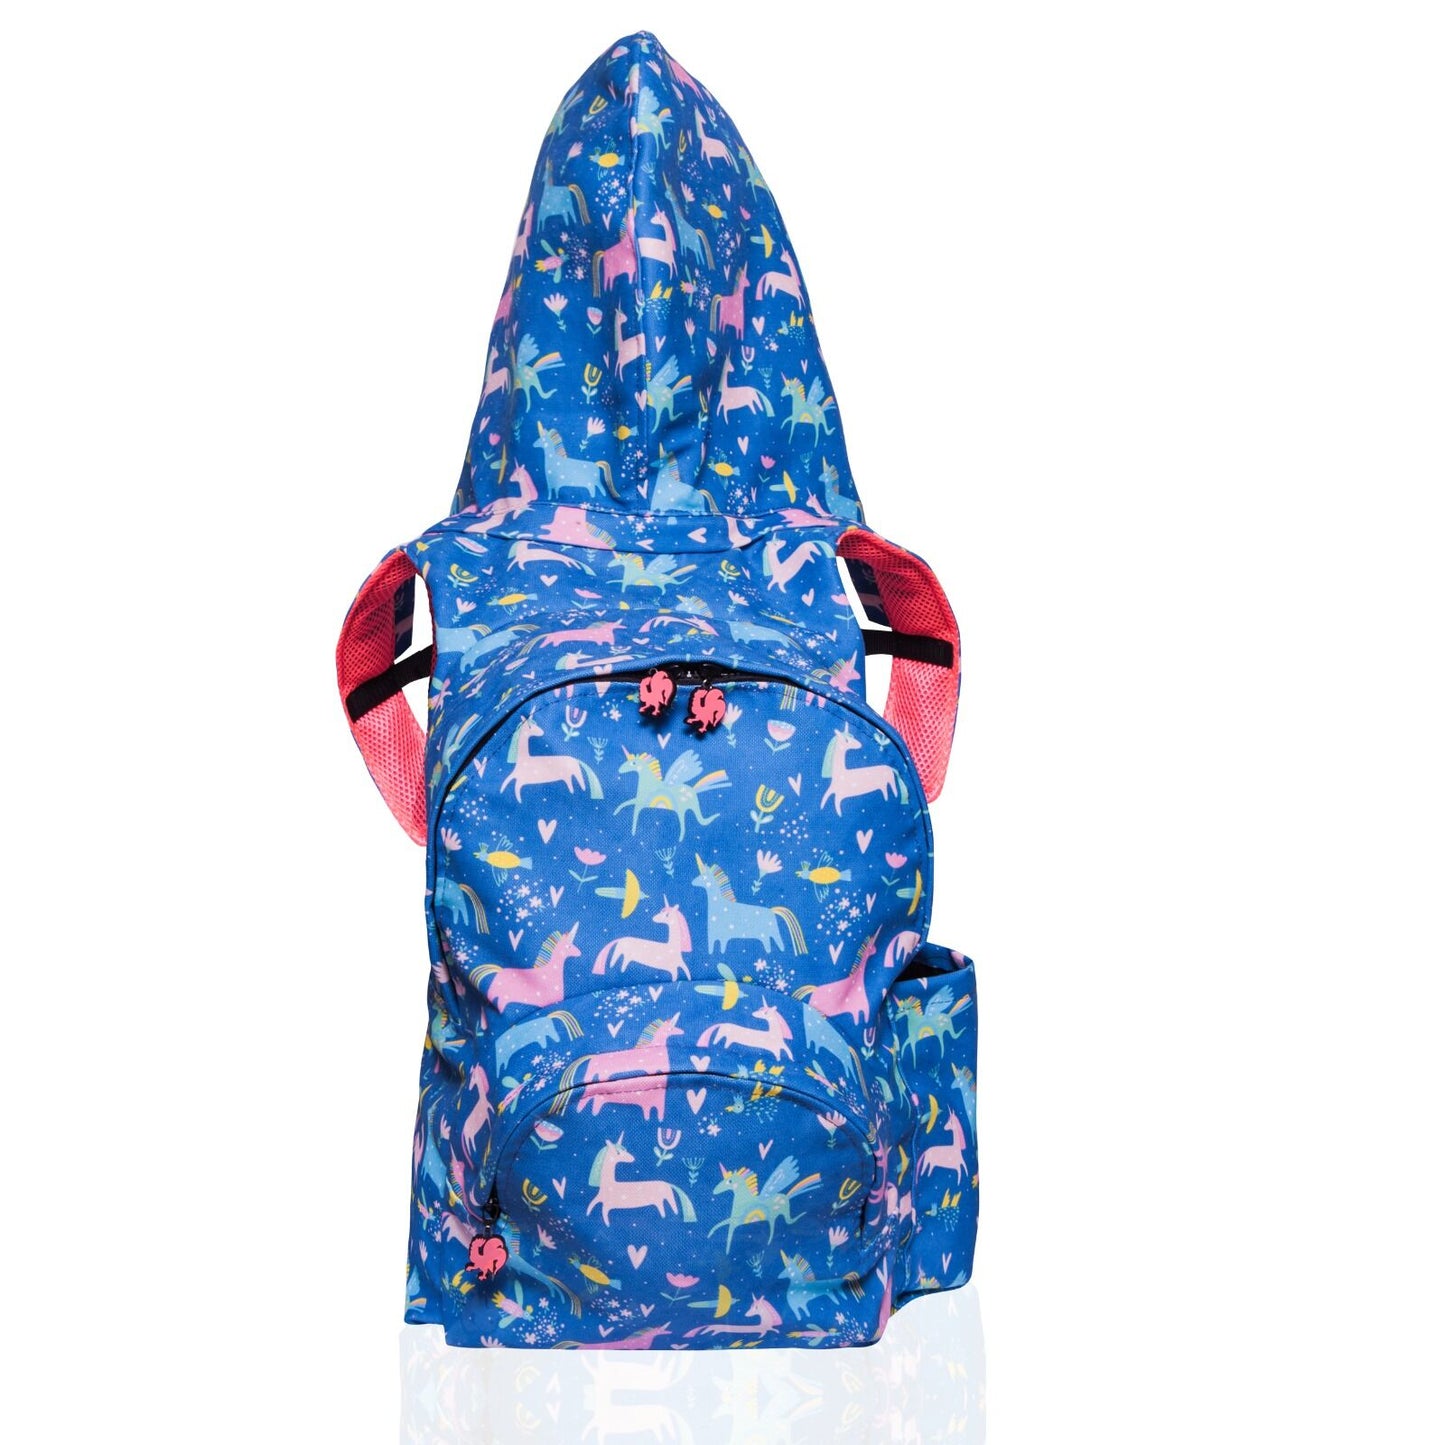 Morikukko Back To School Unicorn Hooded Backpack